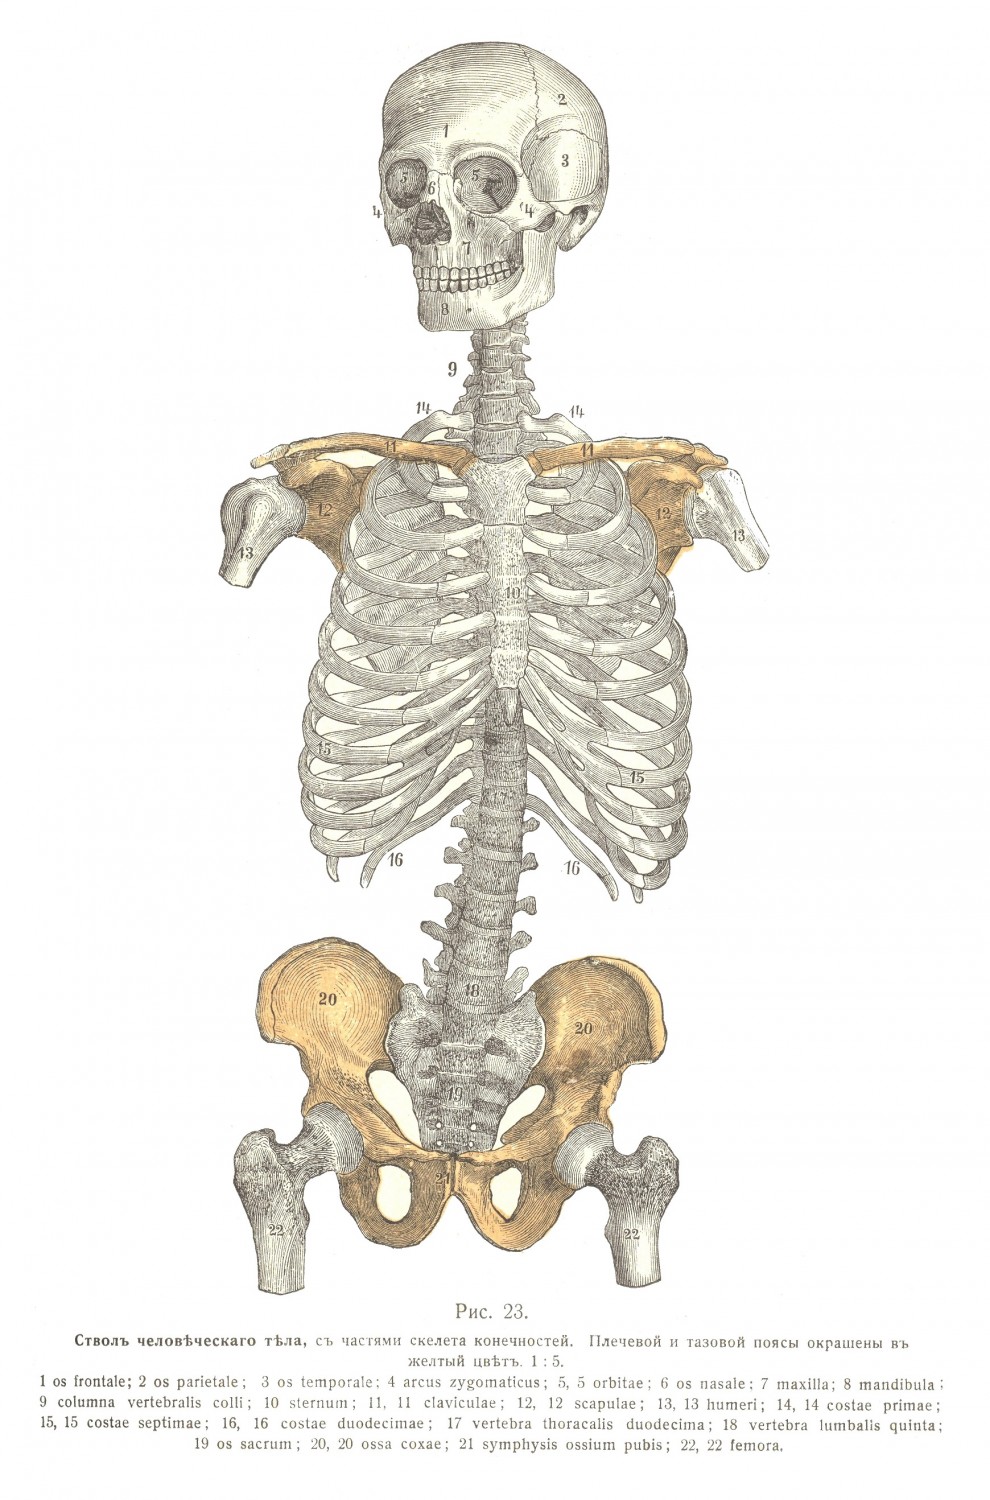 Обзоръ скелета, форма, наружный видъ, части костей, общія обозначенія.